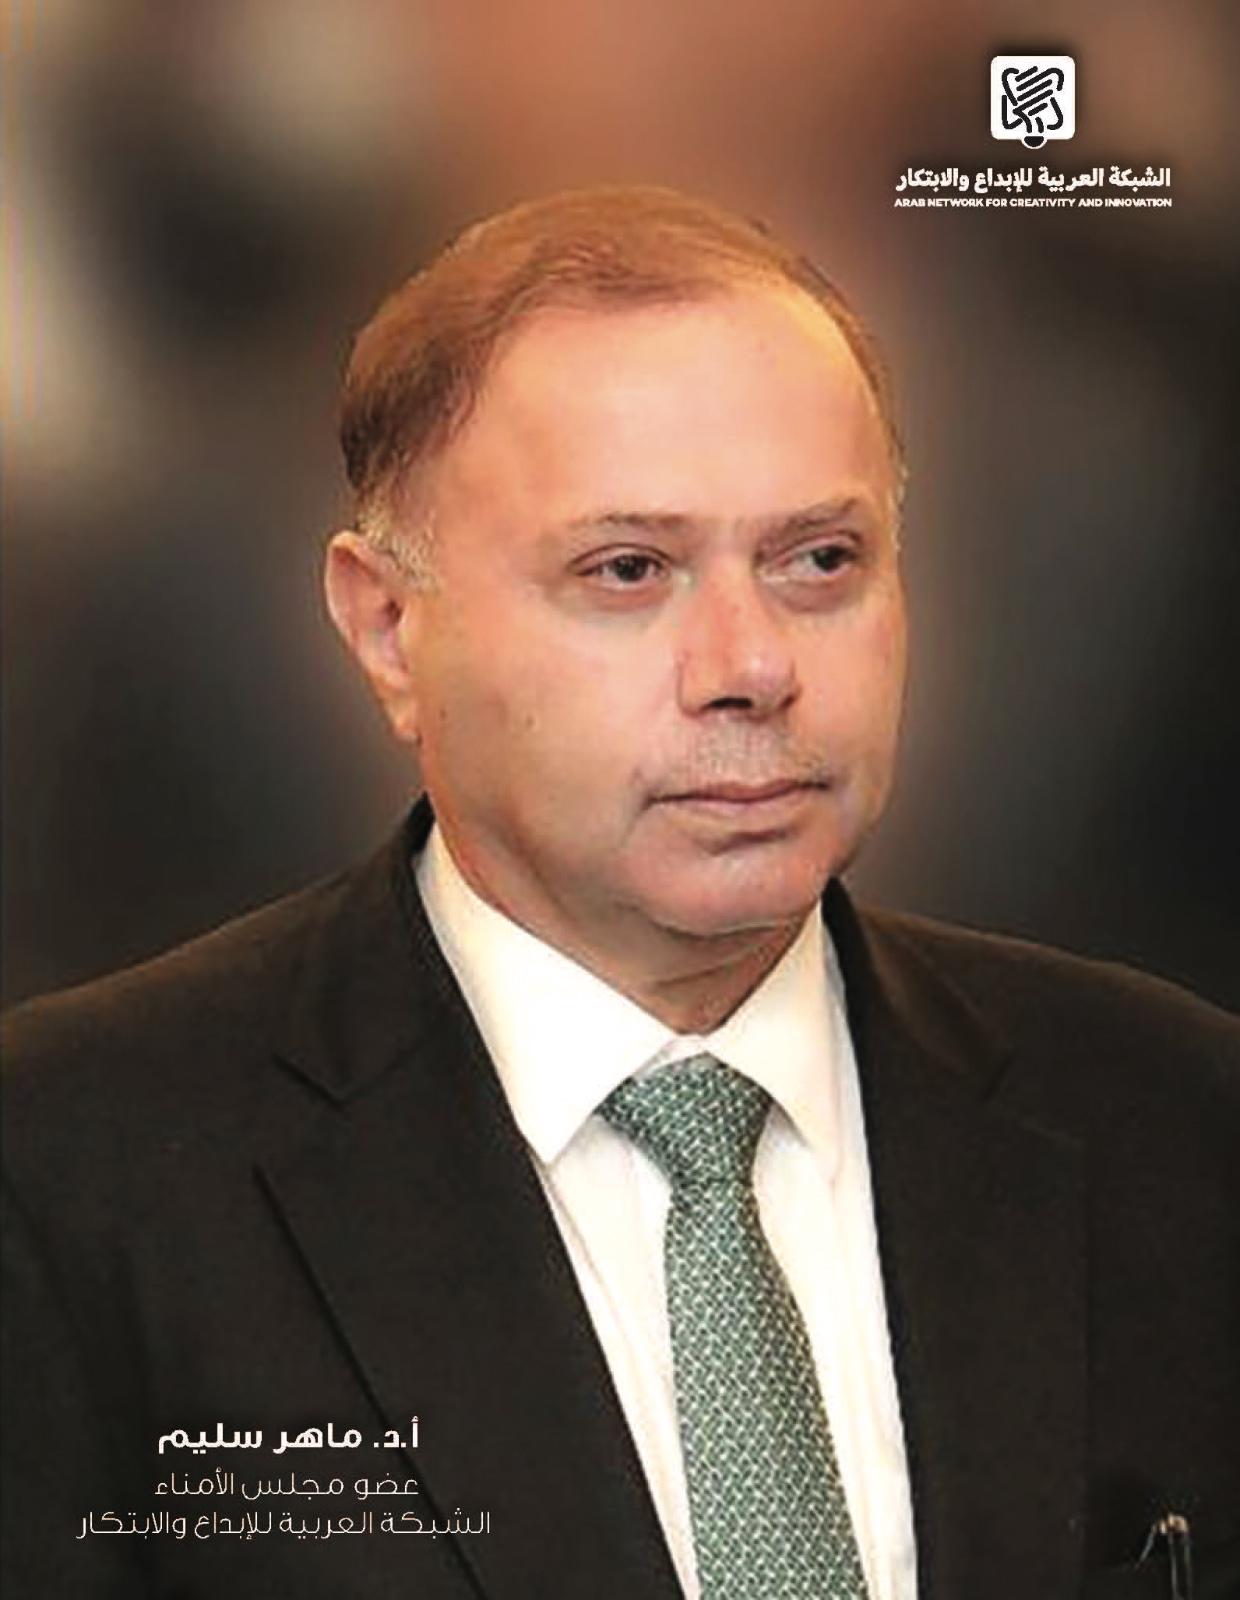 د. ماهر سليم عضواً في مجلس أمناء الشبكة العربية للإبداع والابتكار